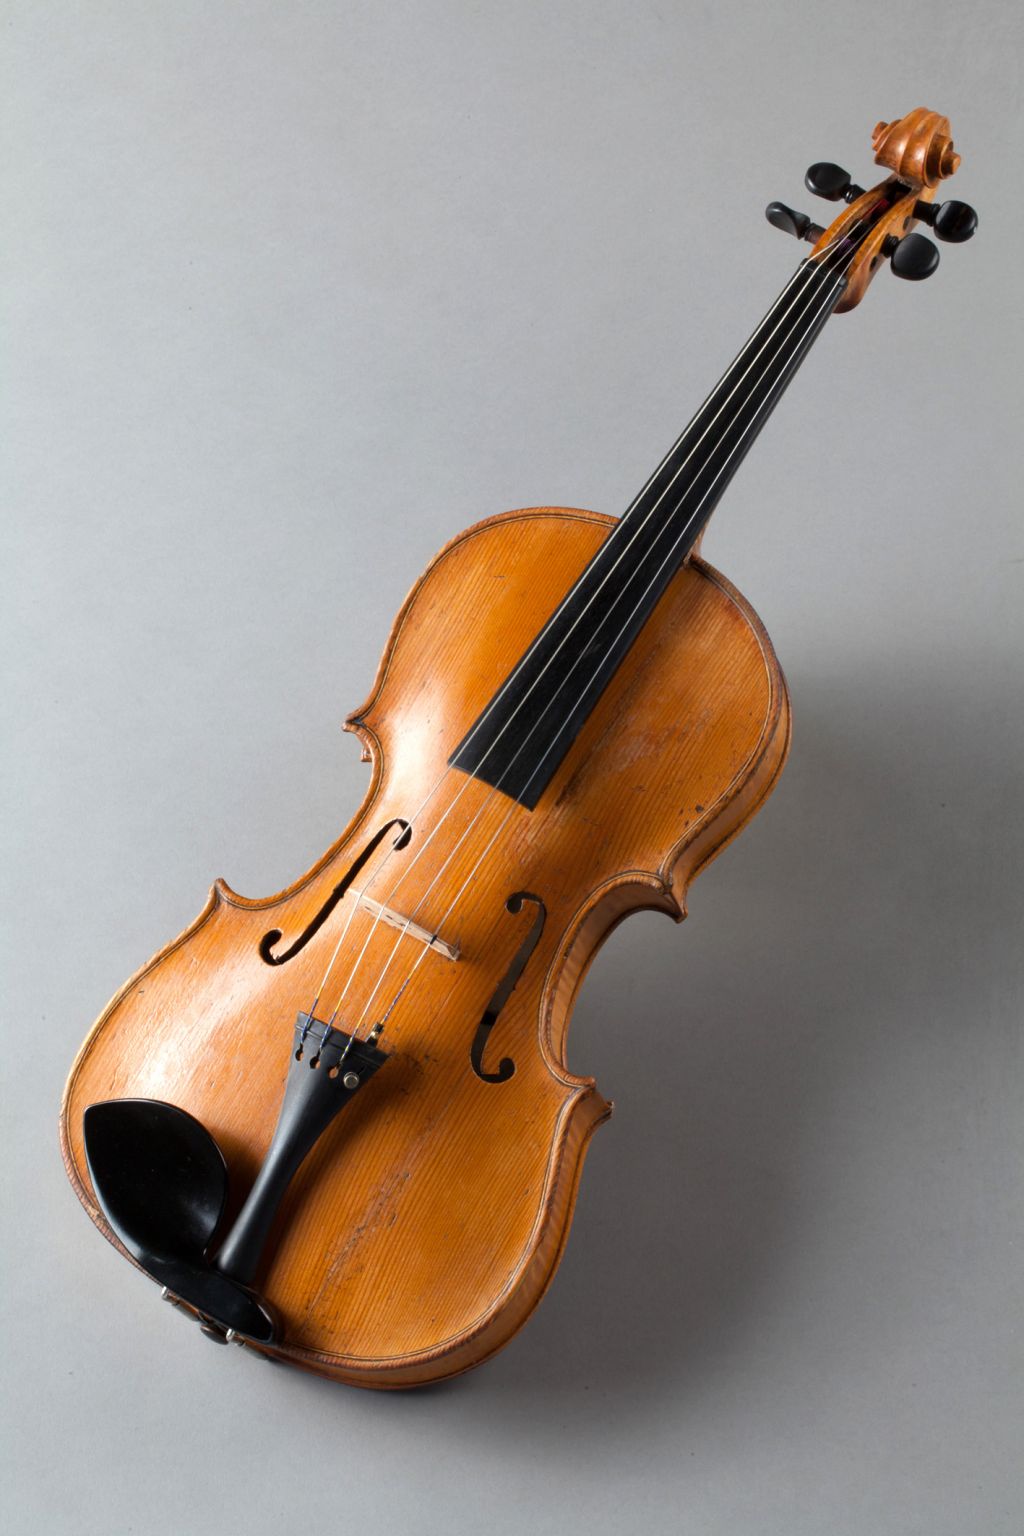 Za violo iz leta 1843 plačali 50 tisočakov